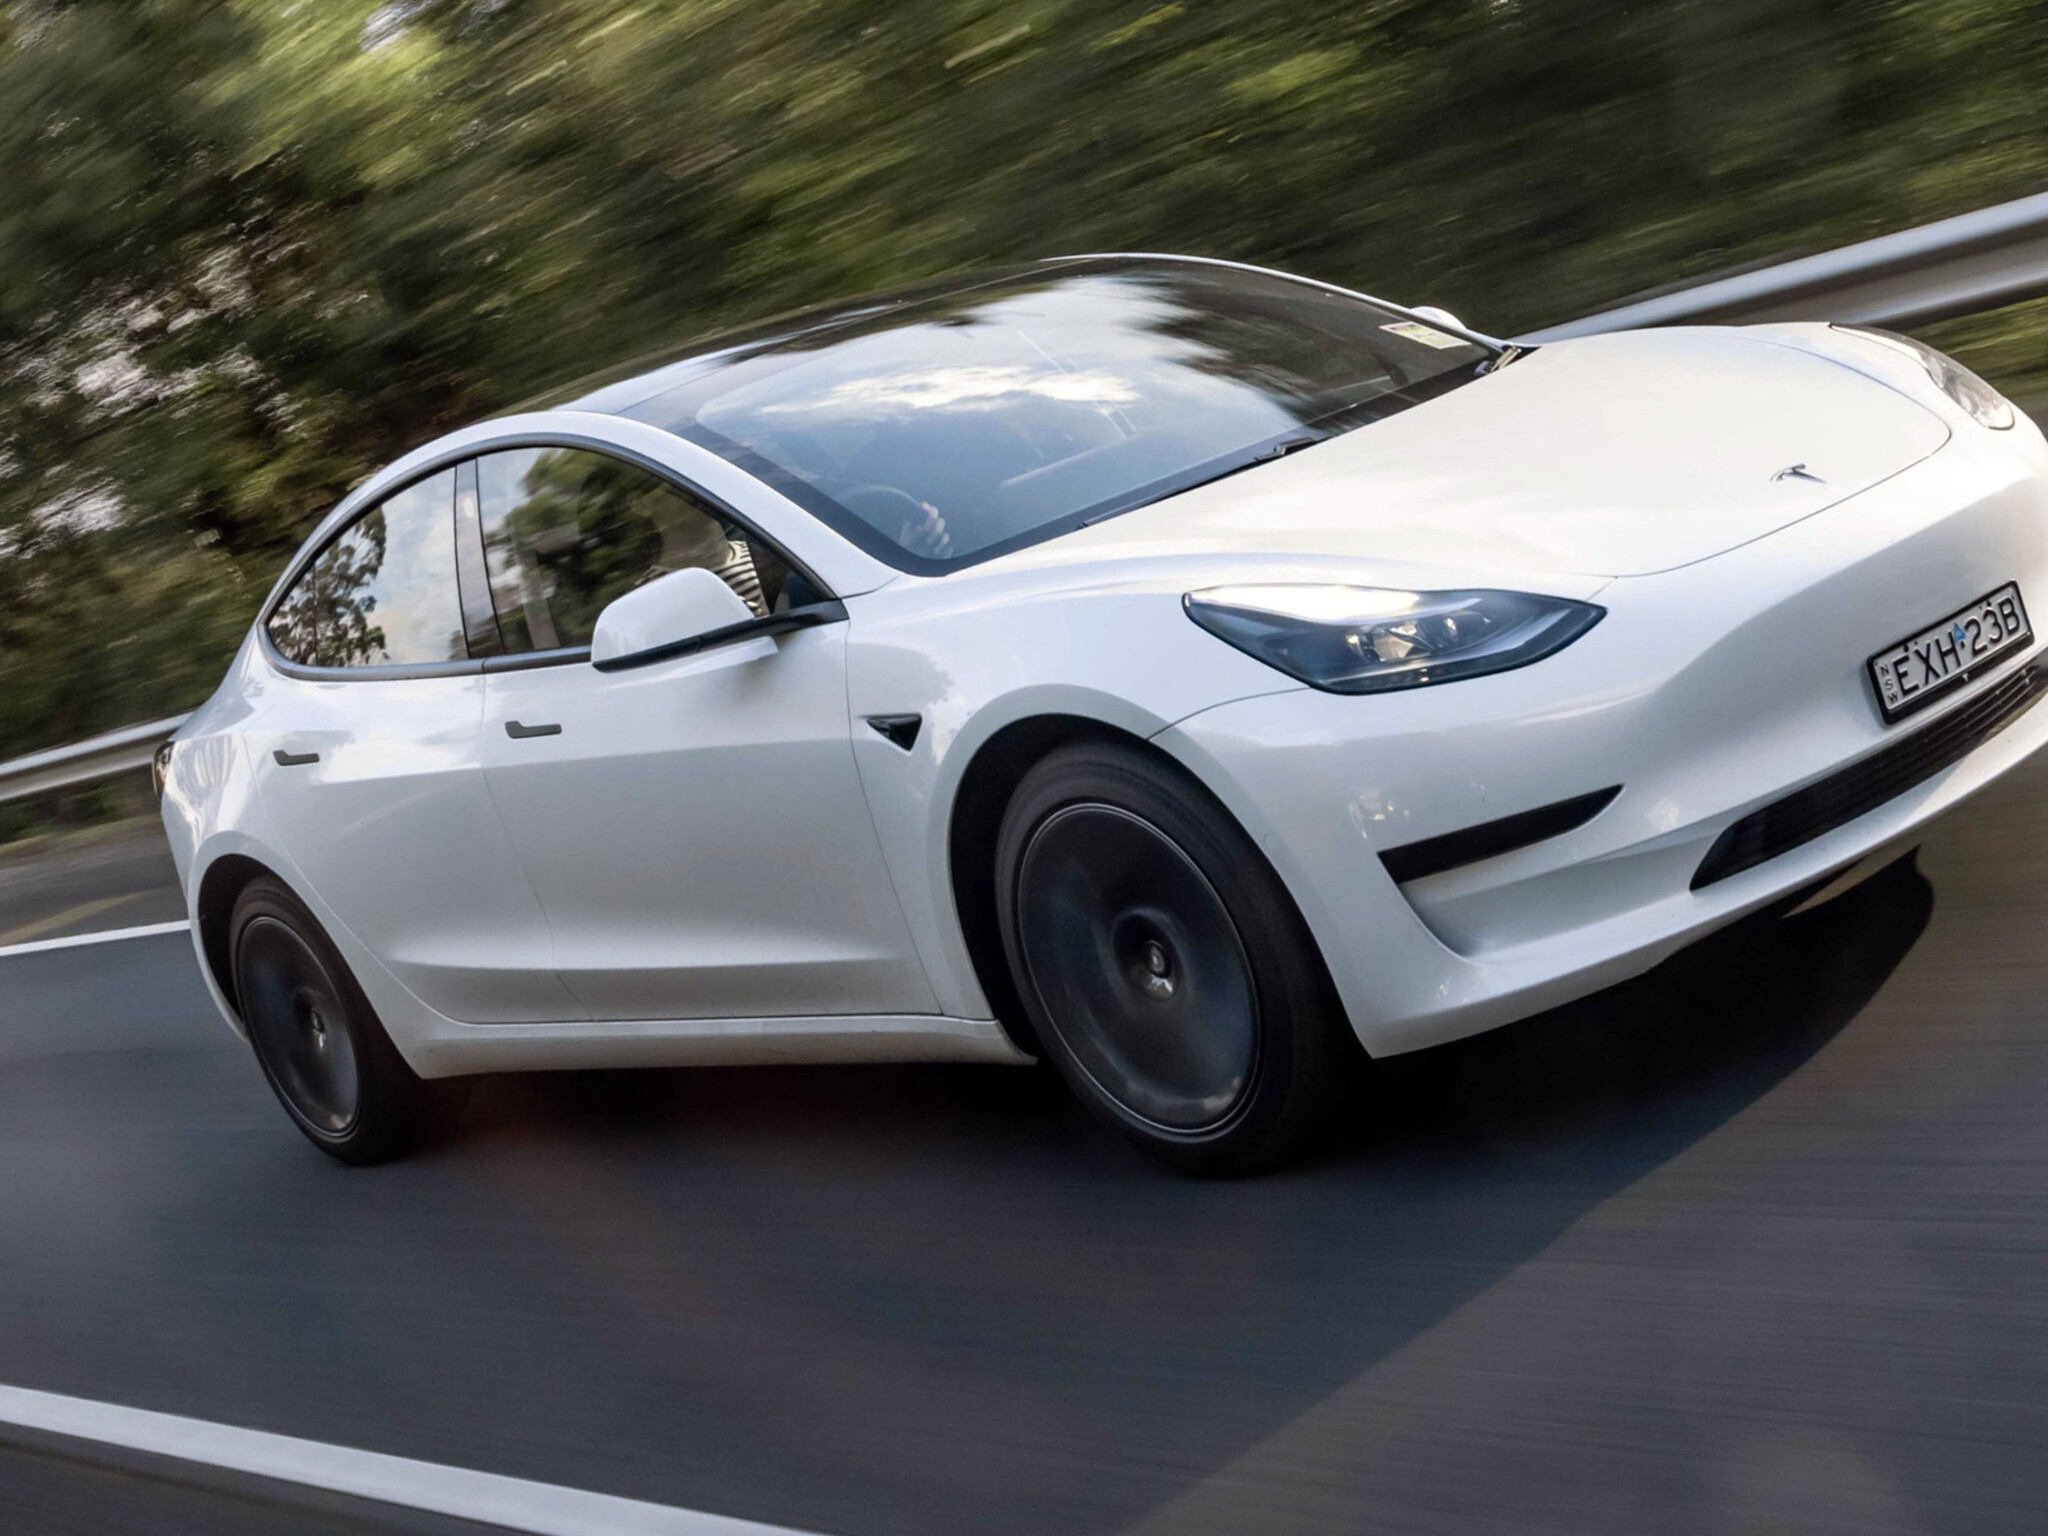 2021 Tesla Model 3 Gets Many Upgrades, Longer Range on All Trims